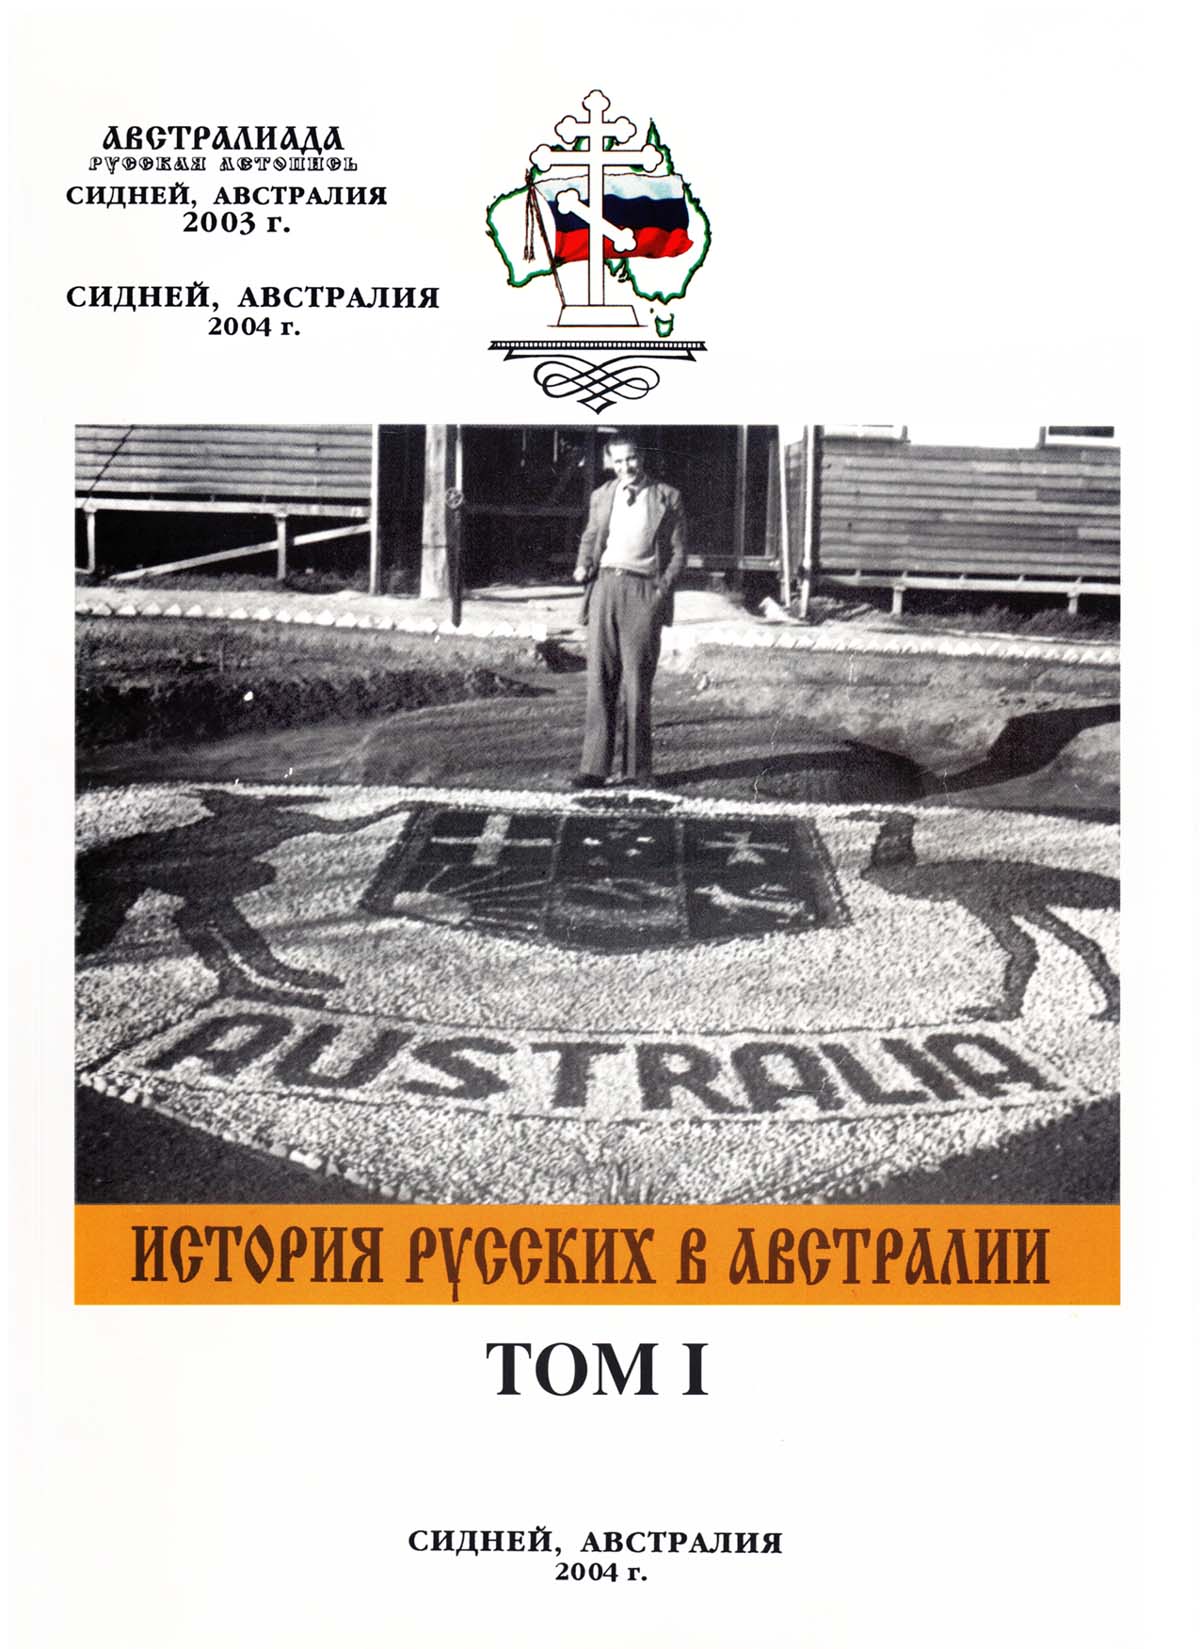 1 том фундаментального 4-х томного коллективного труда под руководством Натальи Мельниковой «История русских в Австралии».